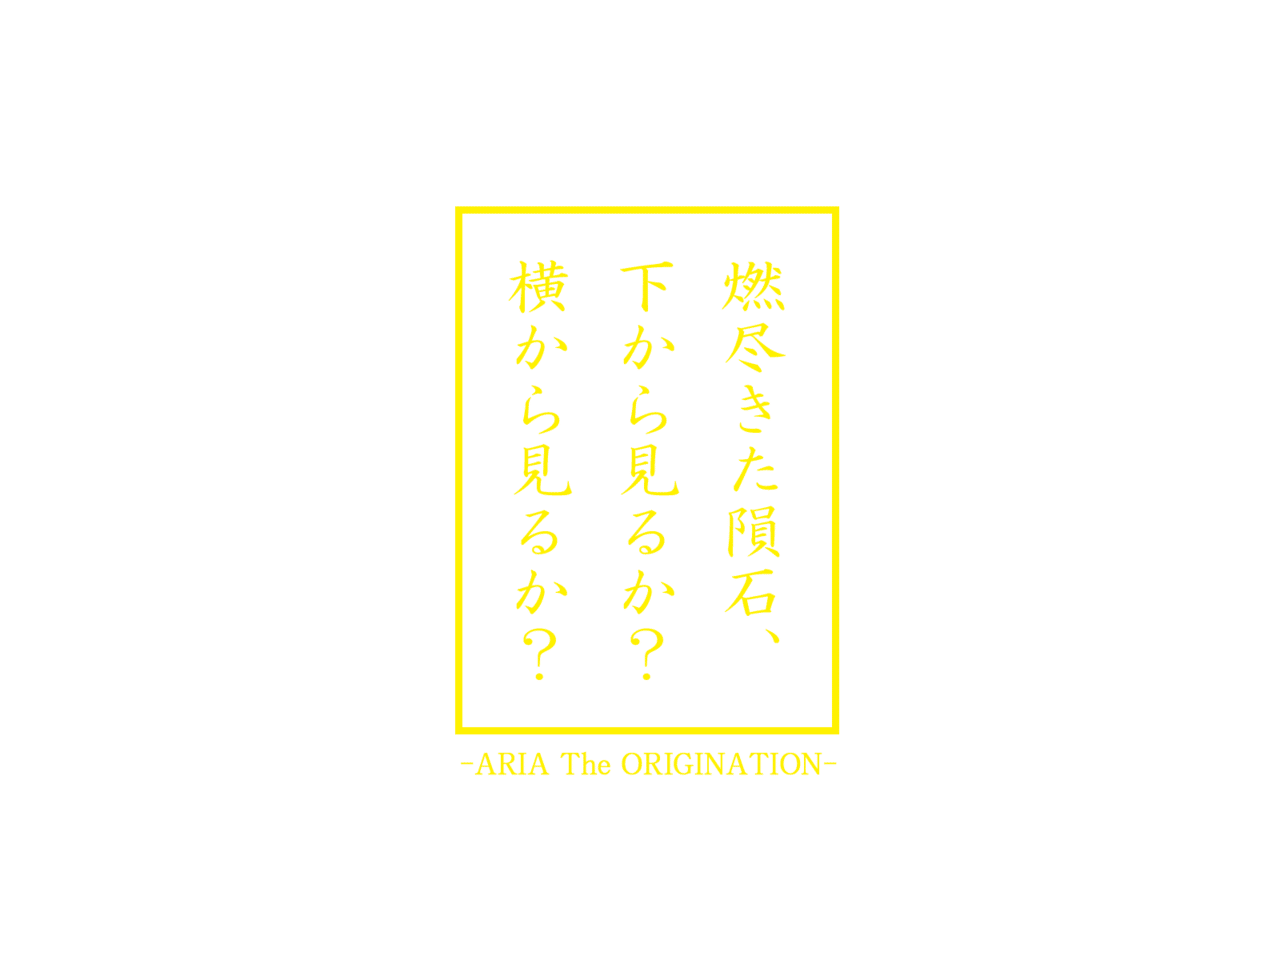 ARIA_打ち上げ花火パロのロゴ